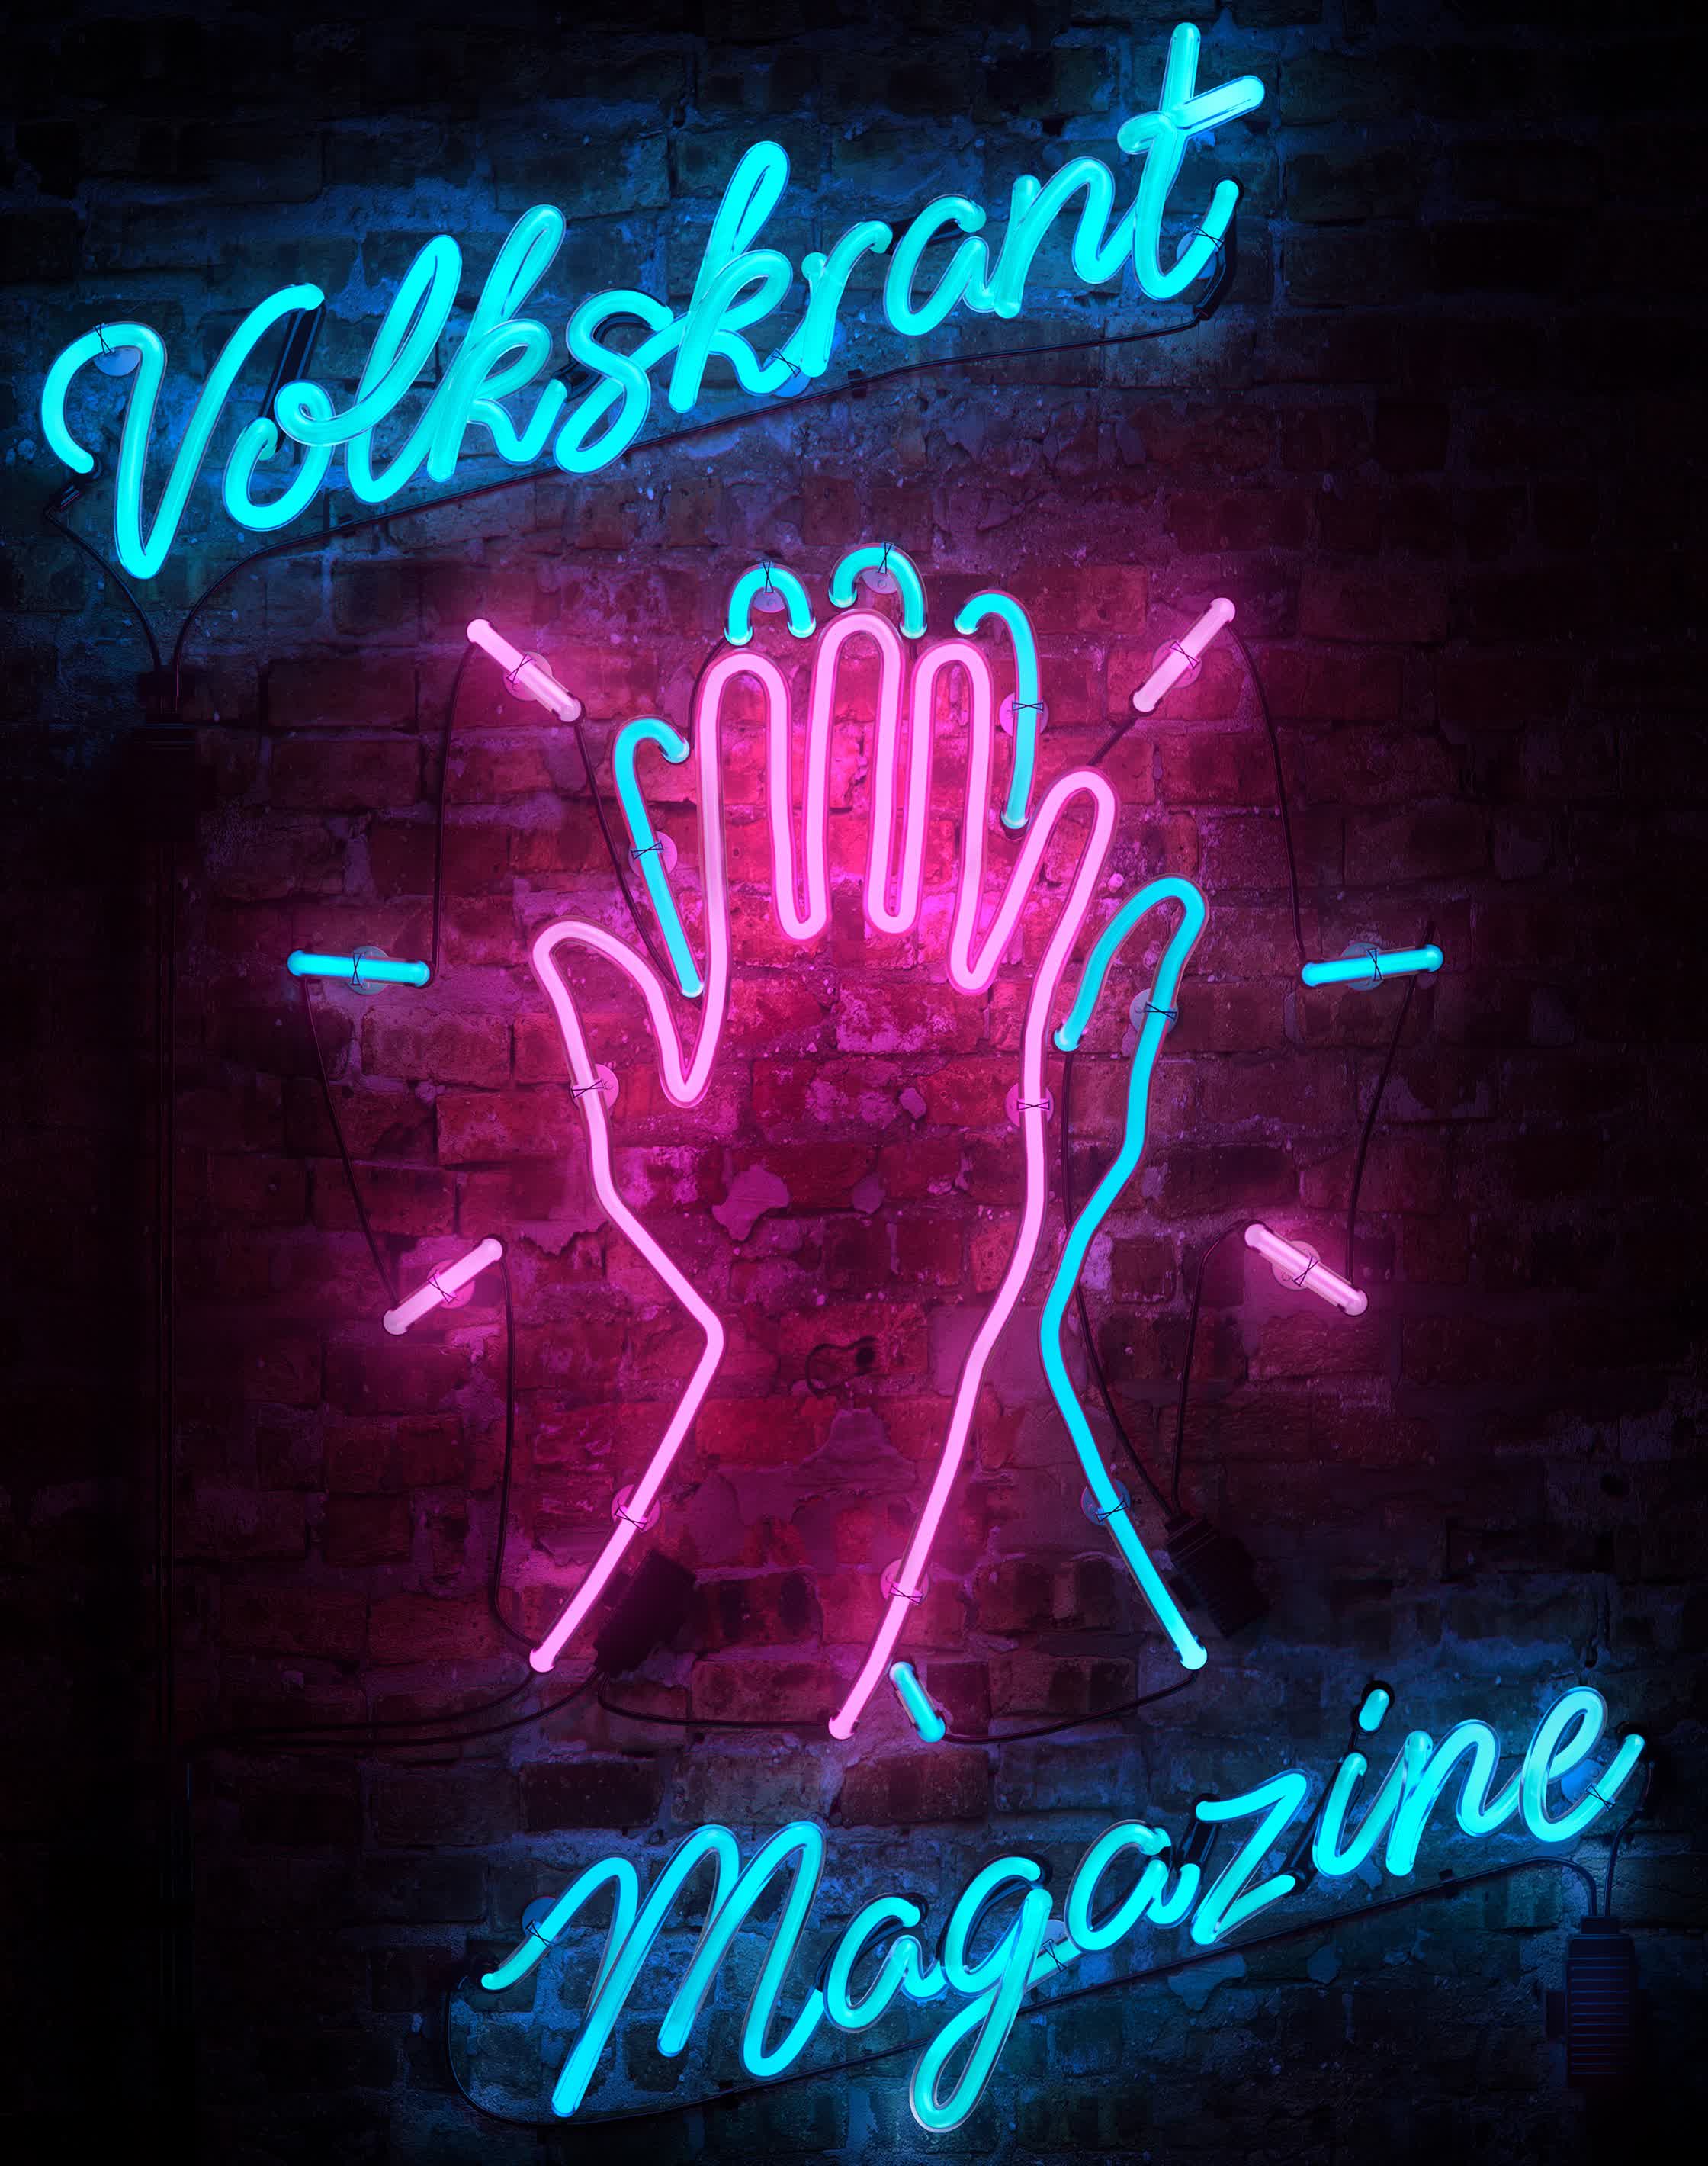 Volkskrant final cover illustration.jpg